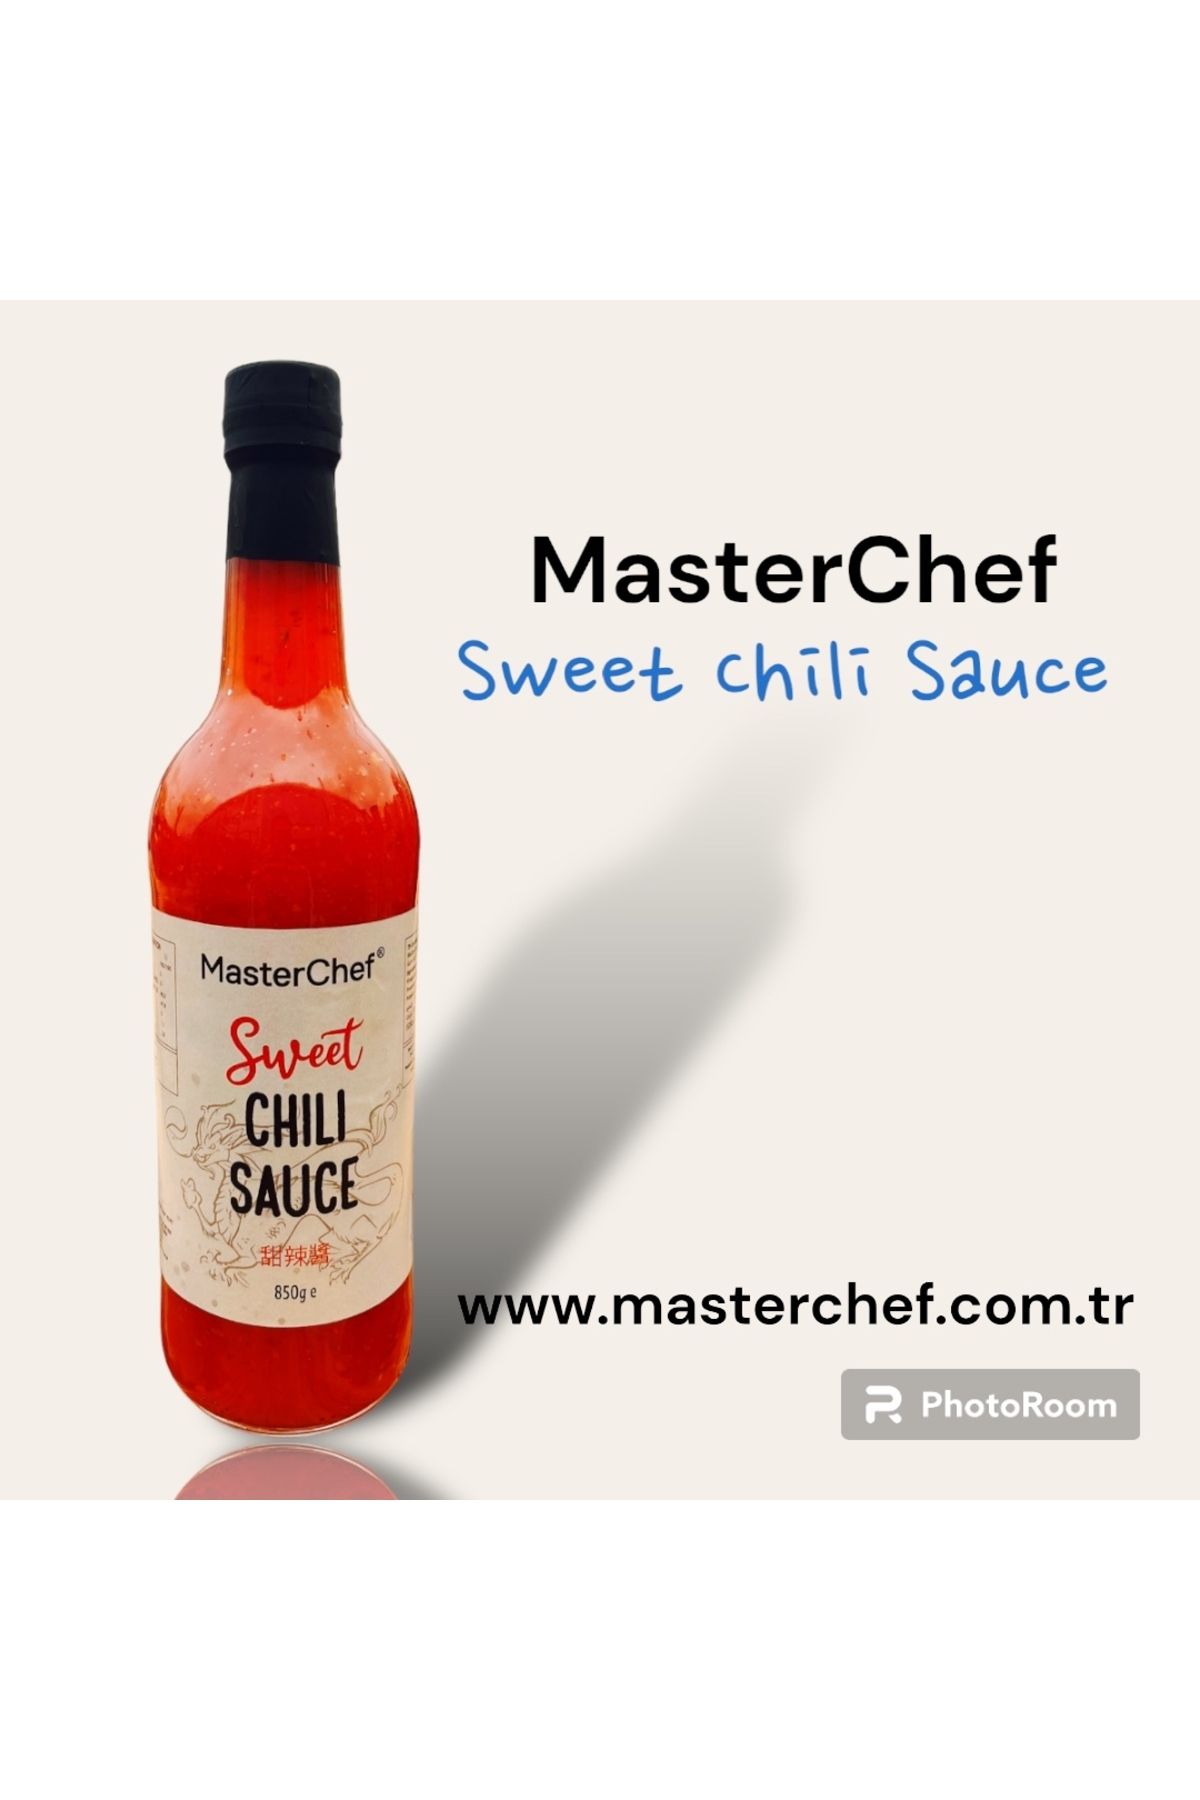 Masterchef Sweet Chili Sauce 850 gr 1 Adet Cam Şişede